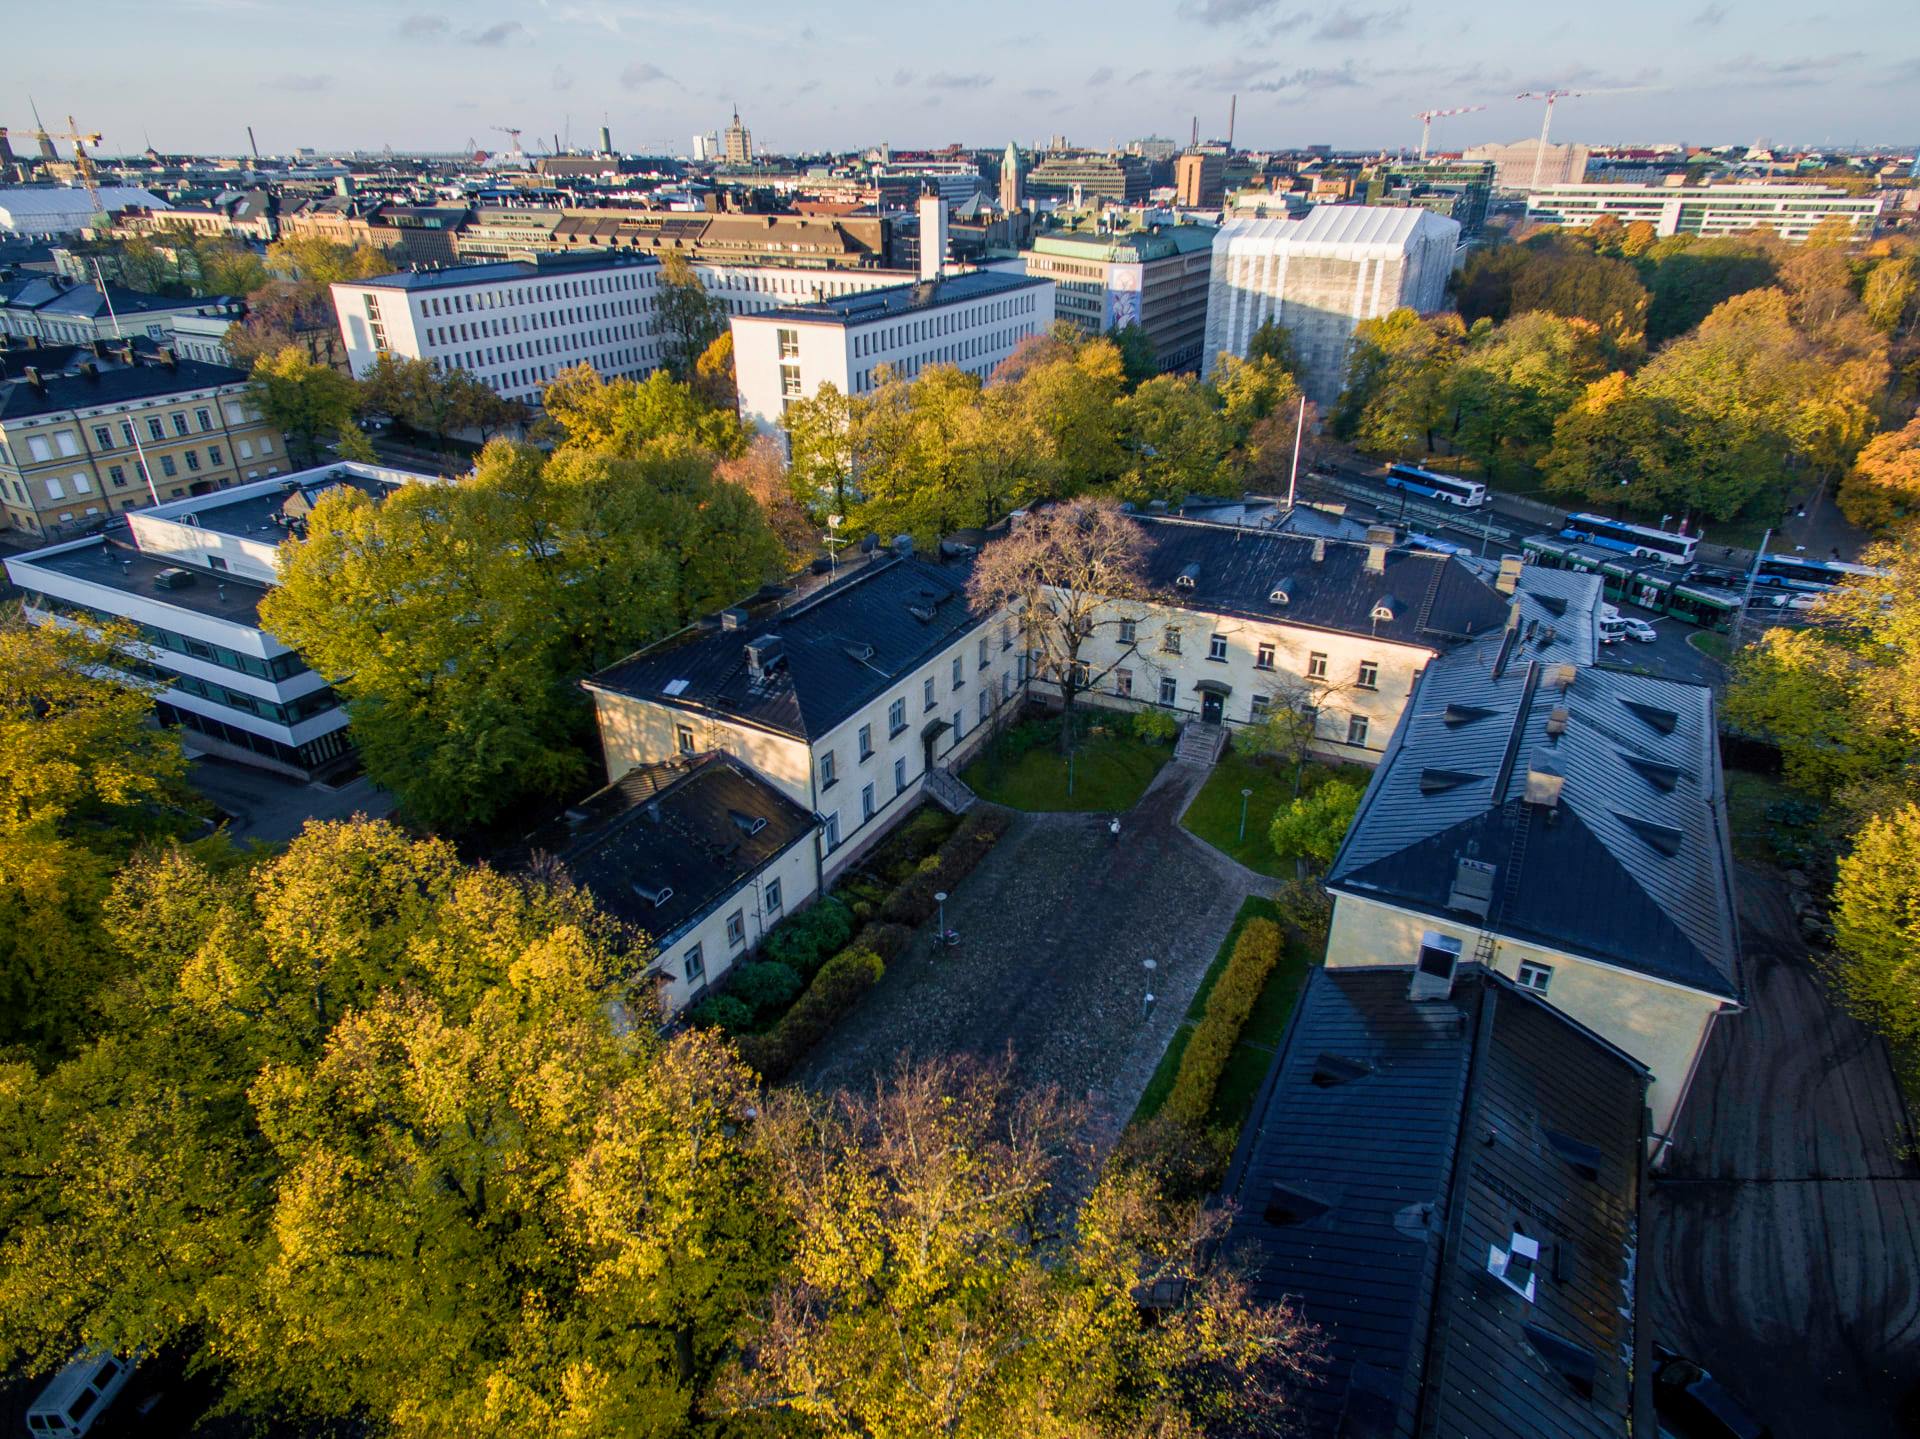 University of Helsinki, where Kramer VIA is installed